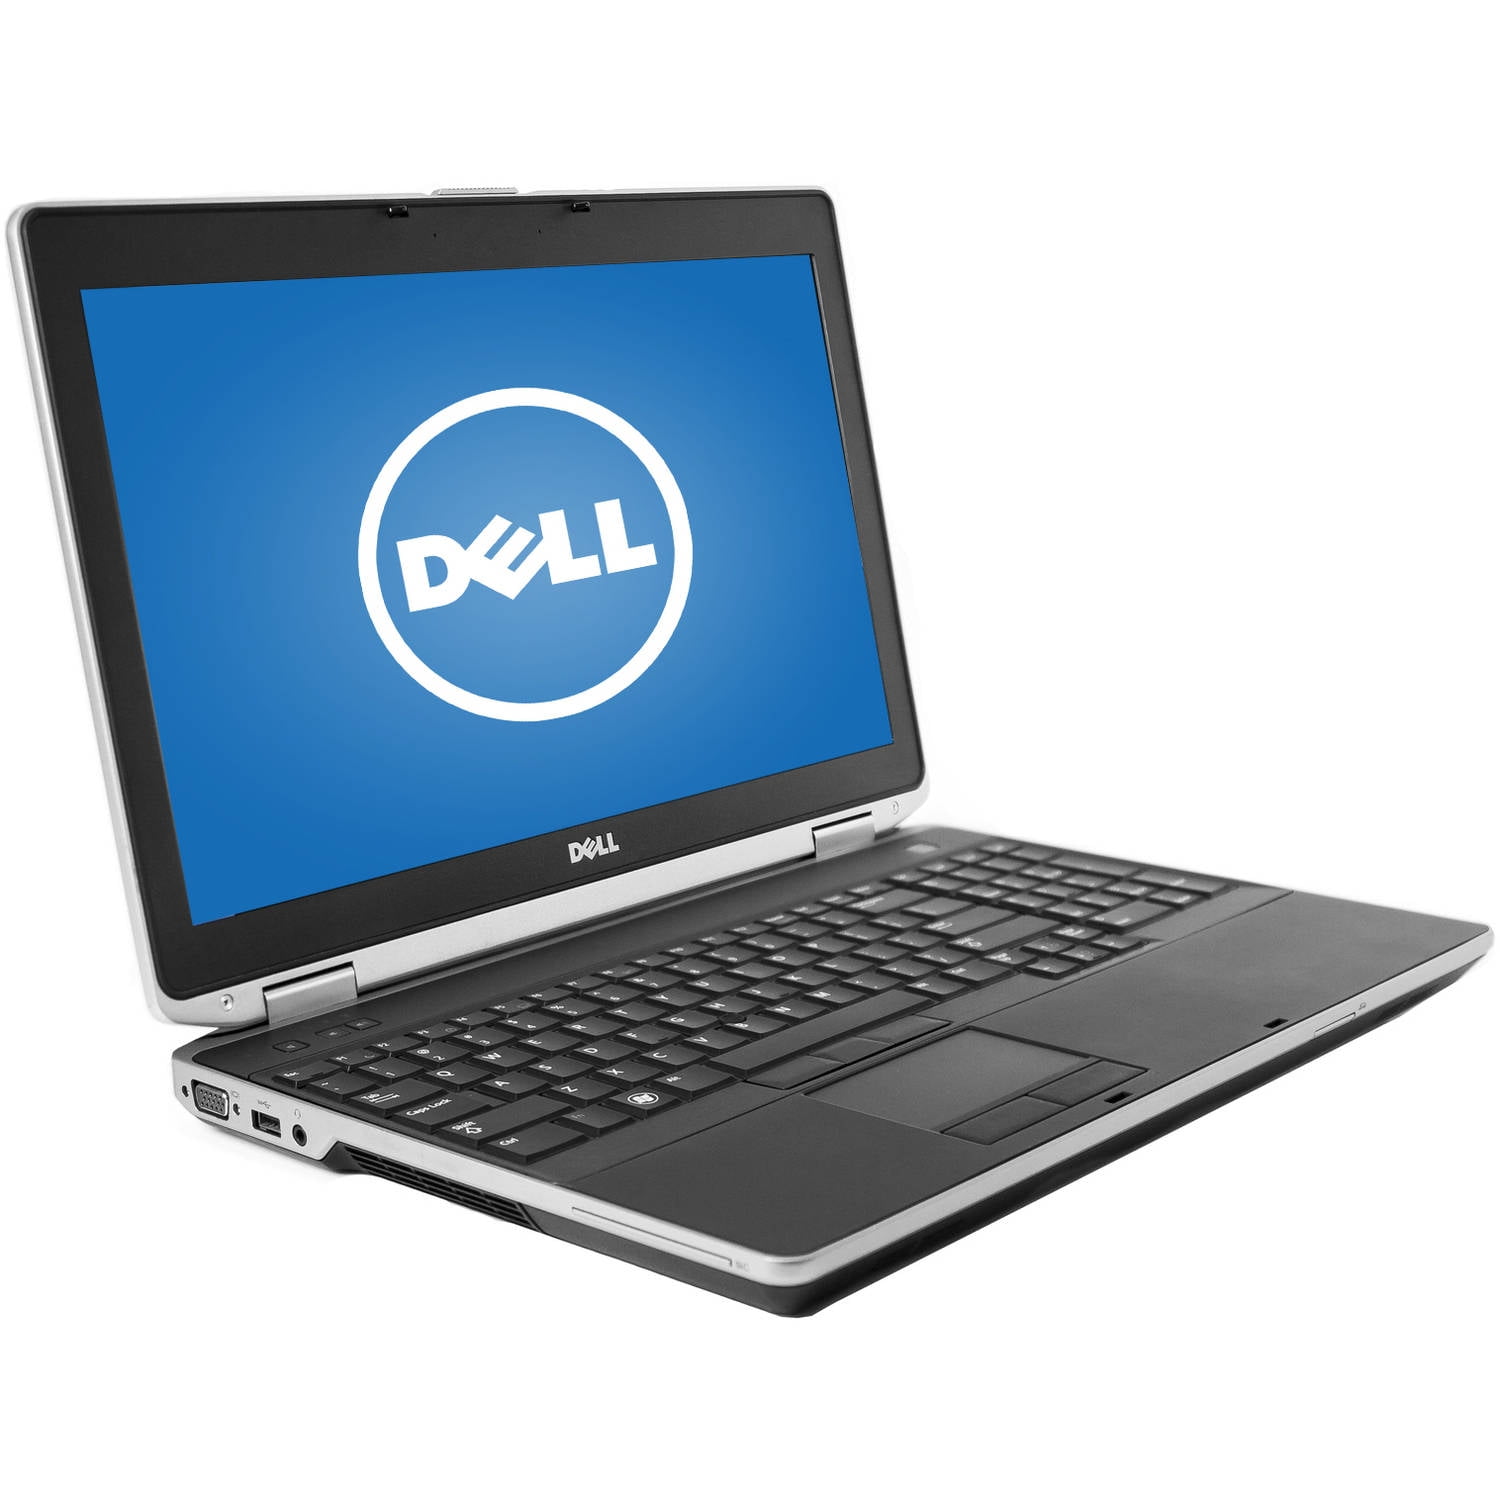 Refurbished Dell Black 15.6" Latitude E6530 Laptop PC with Intel Core